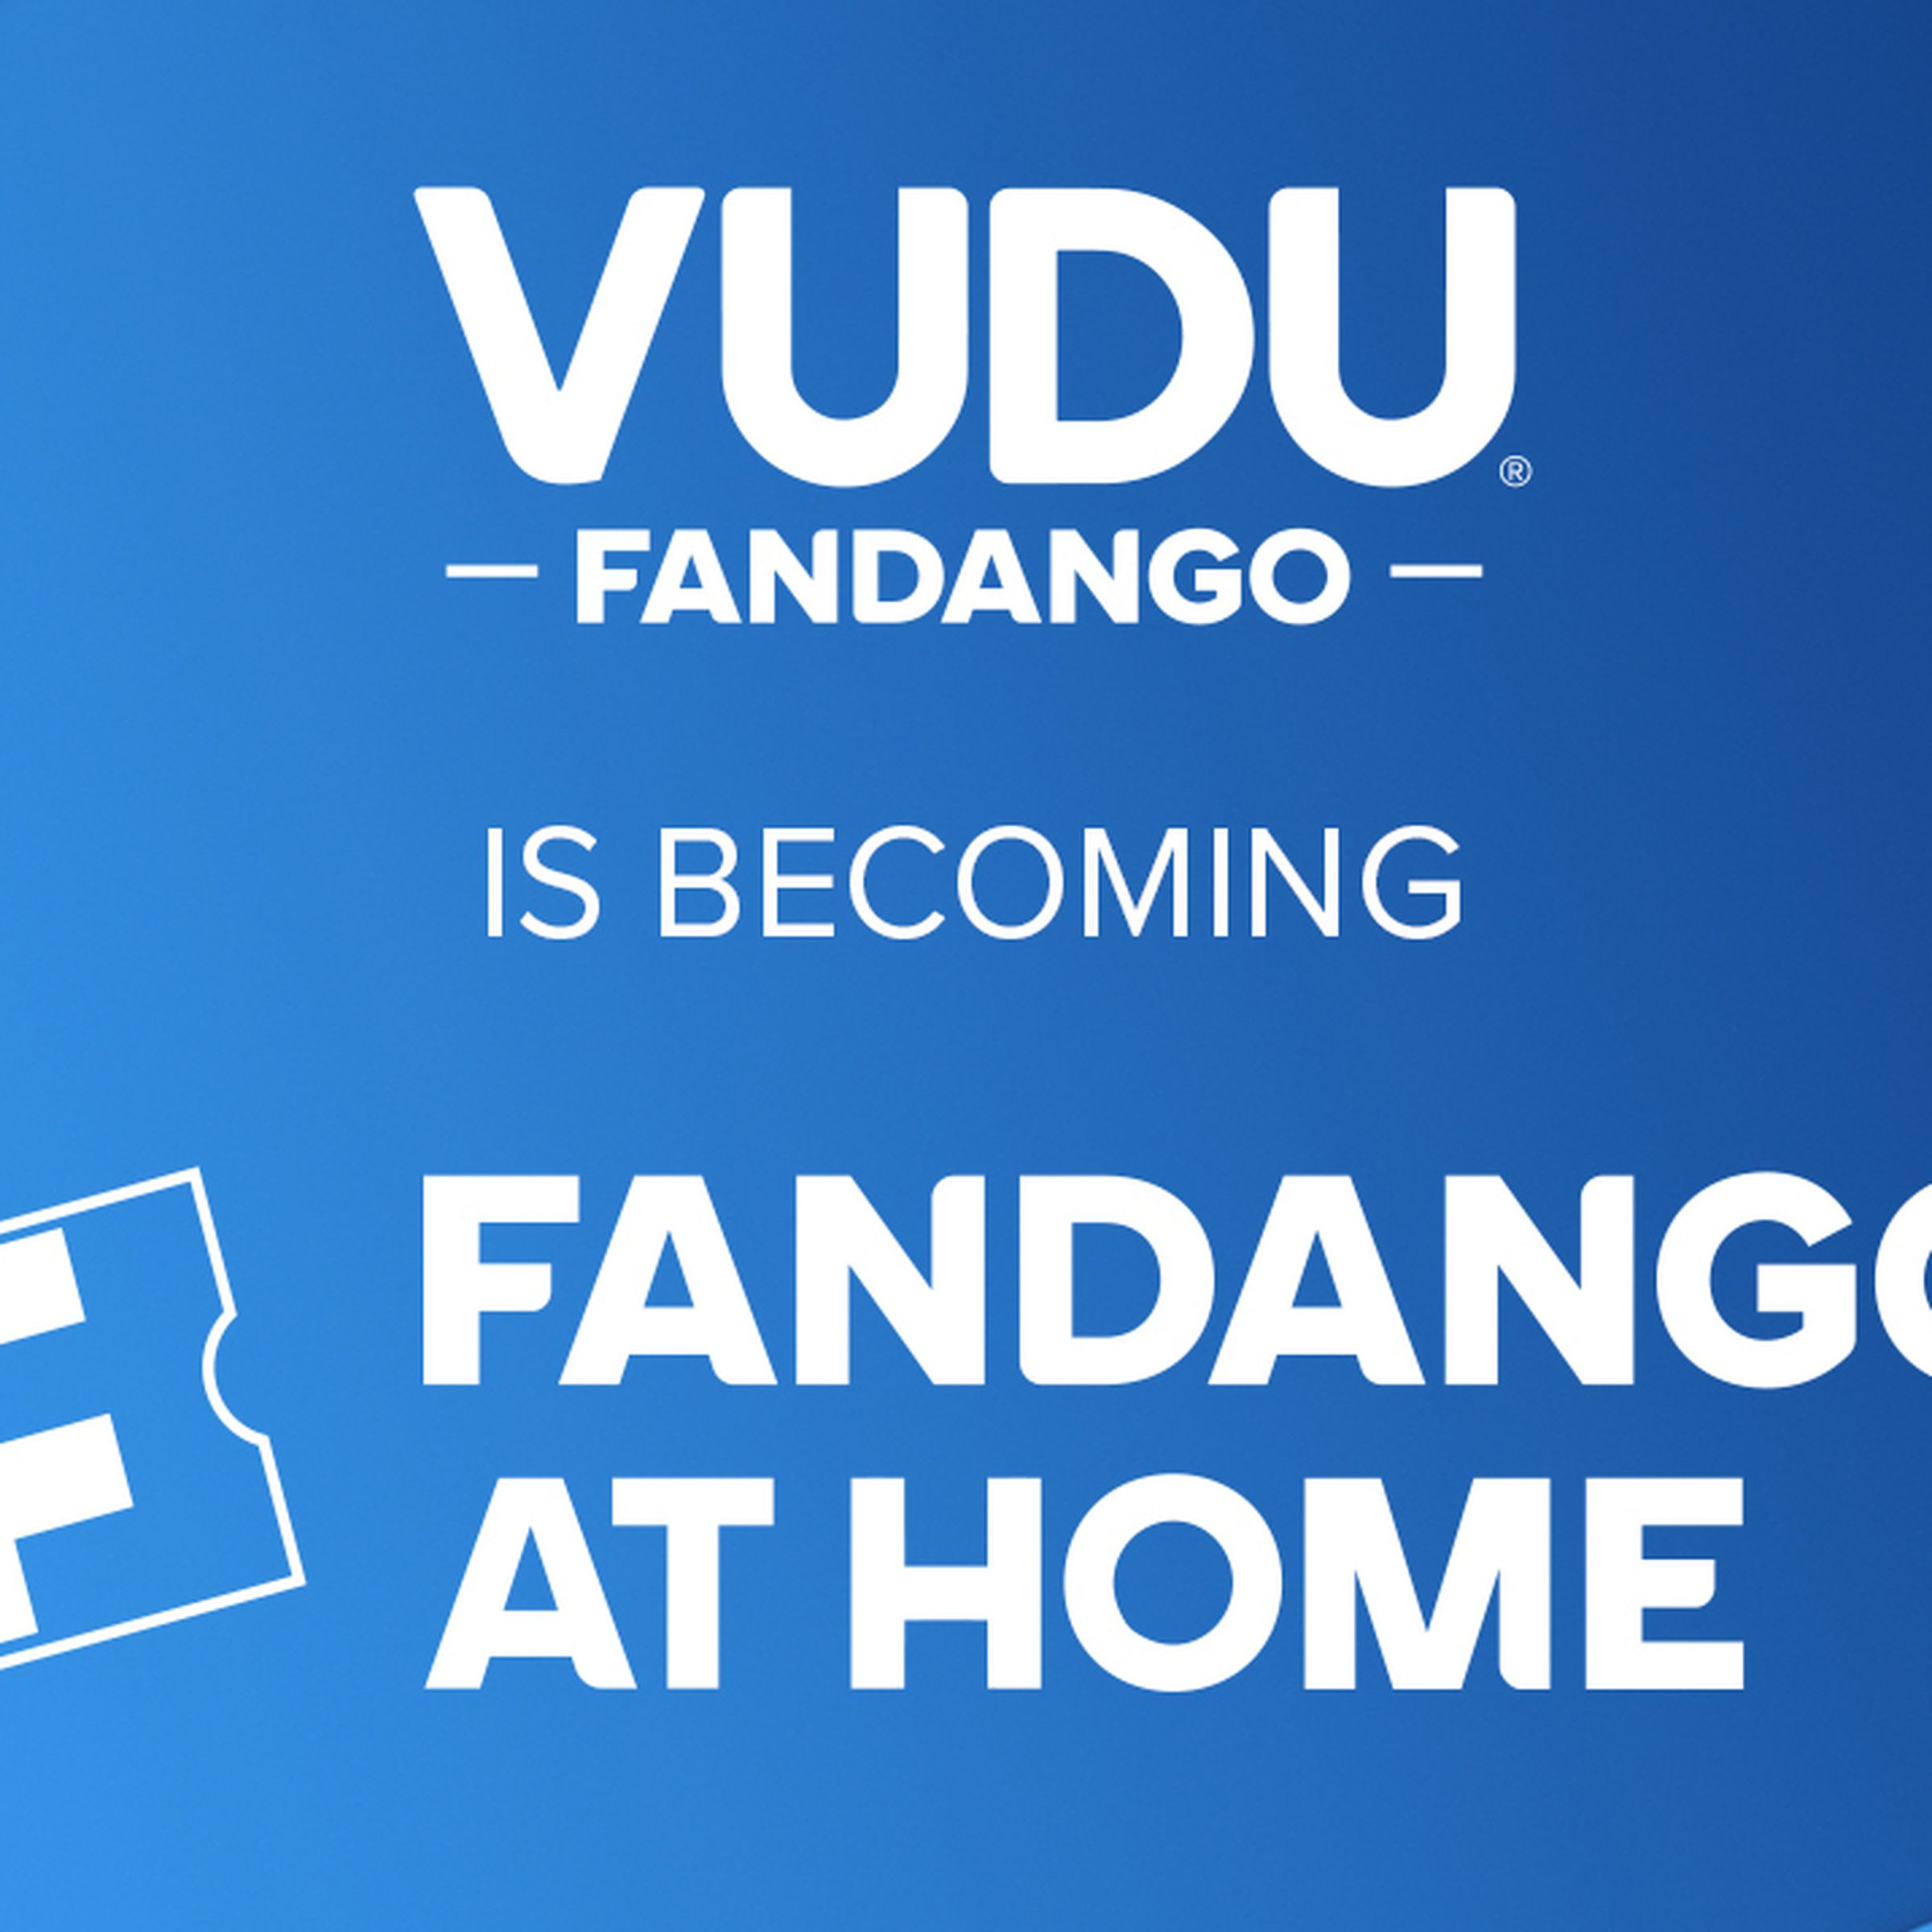 An image announcing Vudu’s rebranding to Fandango at Home.